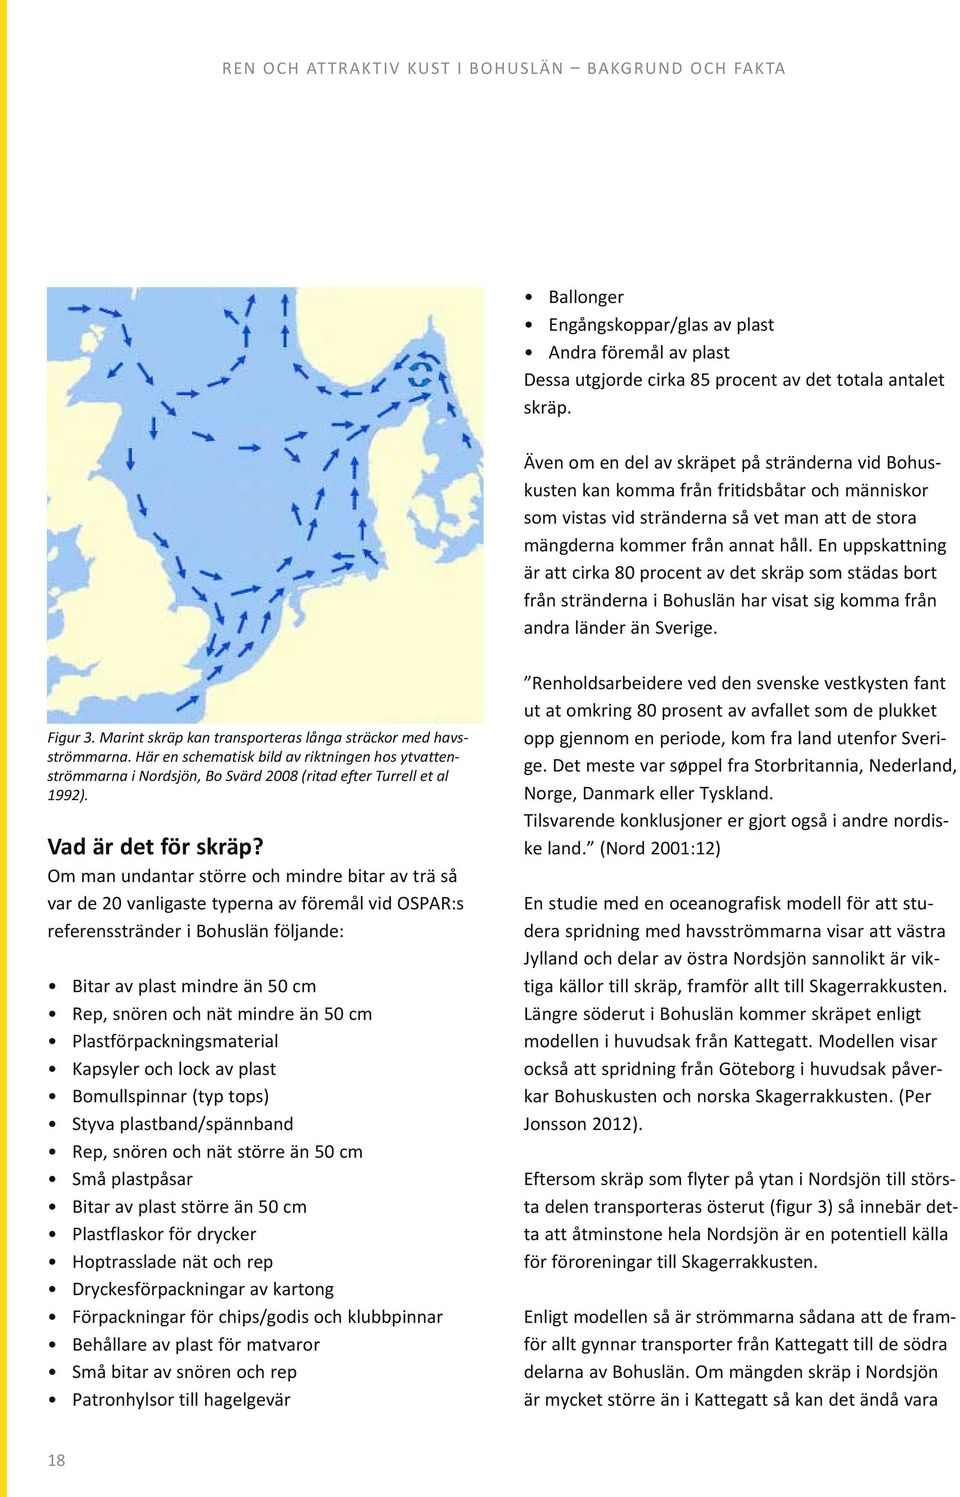 En uppskattning är att cirka 80 procent av det skräp som städas bort från stränderna i Bohuslän har visat sig komma från andra länder än Sverige. Figur 3.